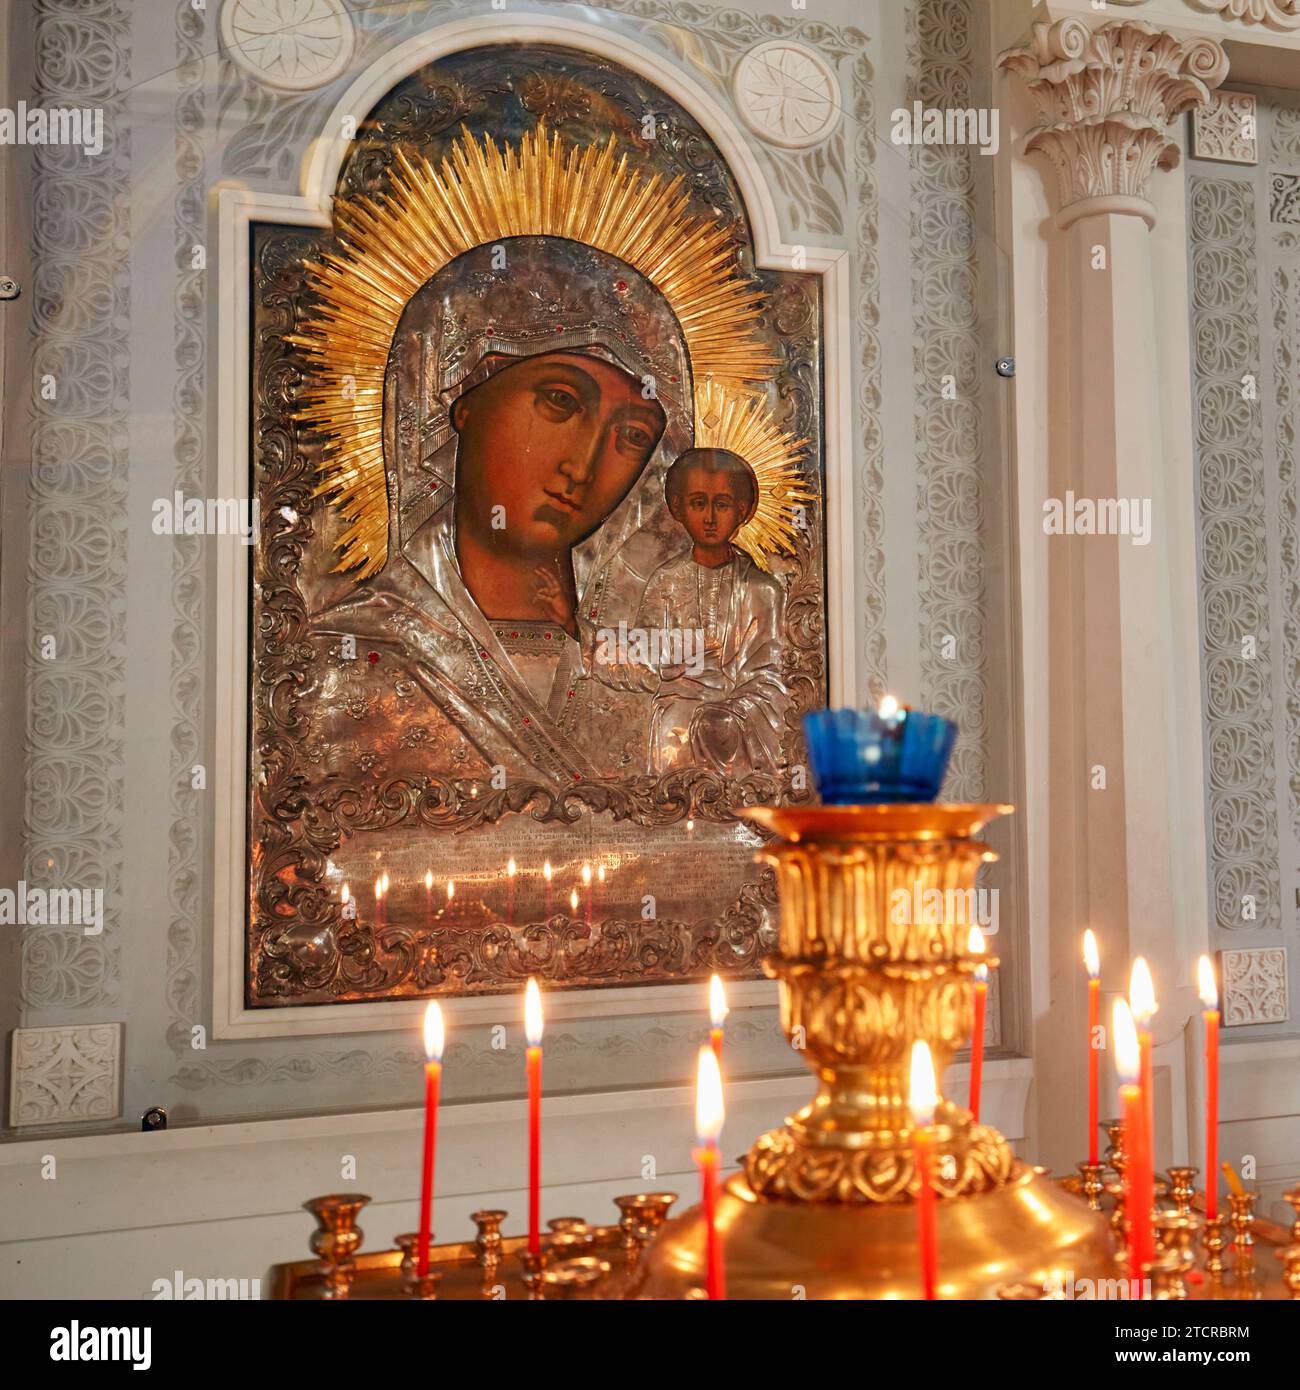 Icono de Nuestra Señora de Kazán (Madre de Dios de Kazán) consagrado en la Iglesia de la decapitación de Juan Bautista por Bohr. Moscú, Federación de Rusia. Foto de stock